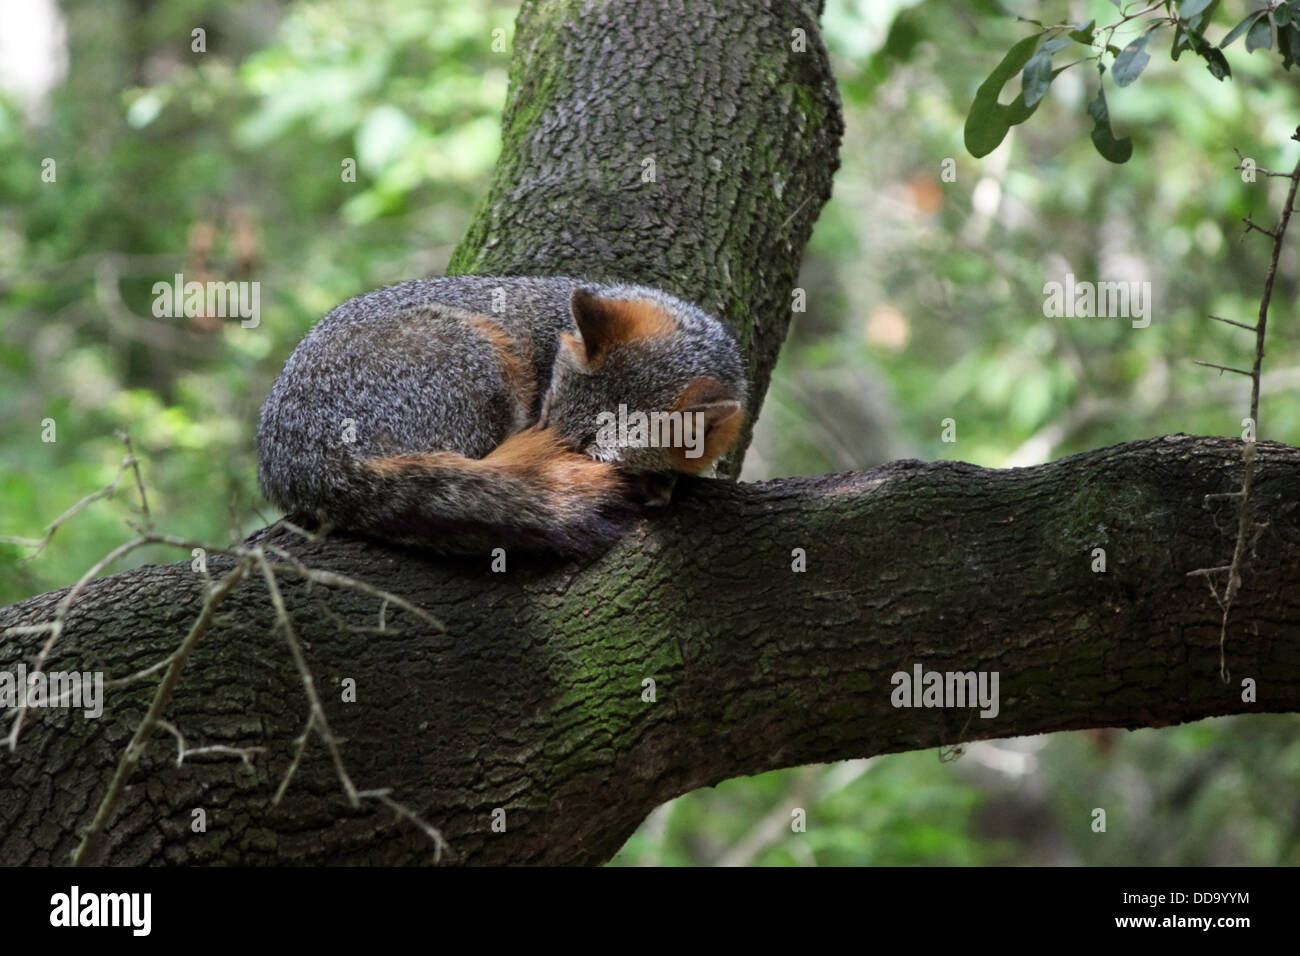 Un pan du renard gris très haut dans un arbre. Banque D'Images